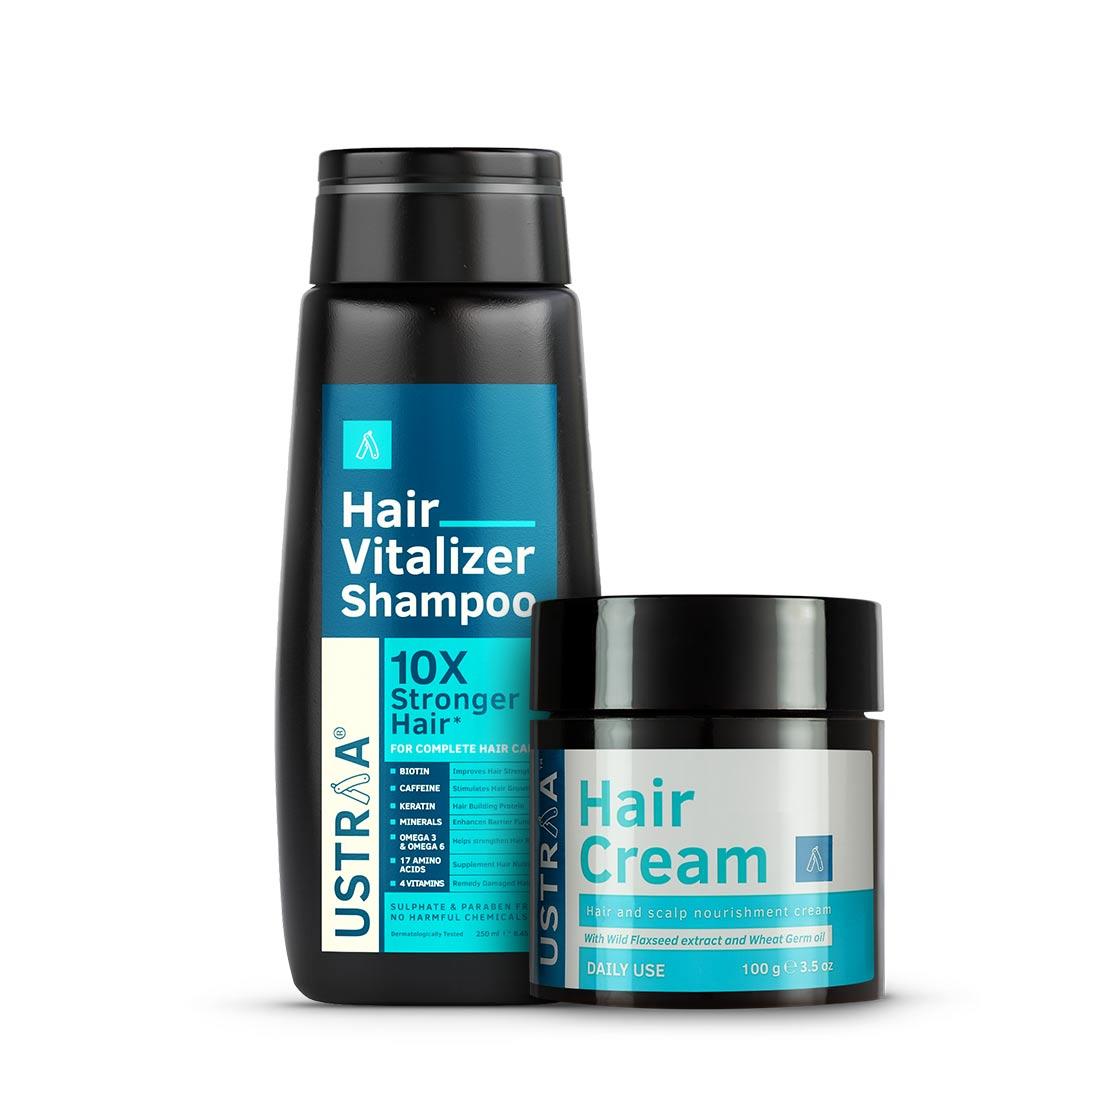 Hair Vitalizer Shampoo & Daily Use Hair Cream